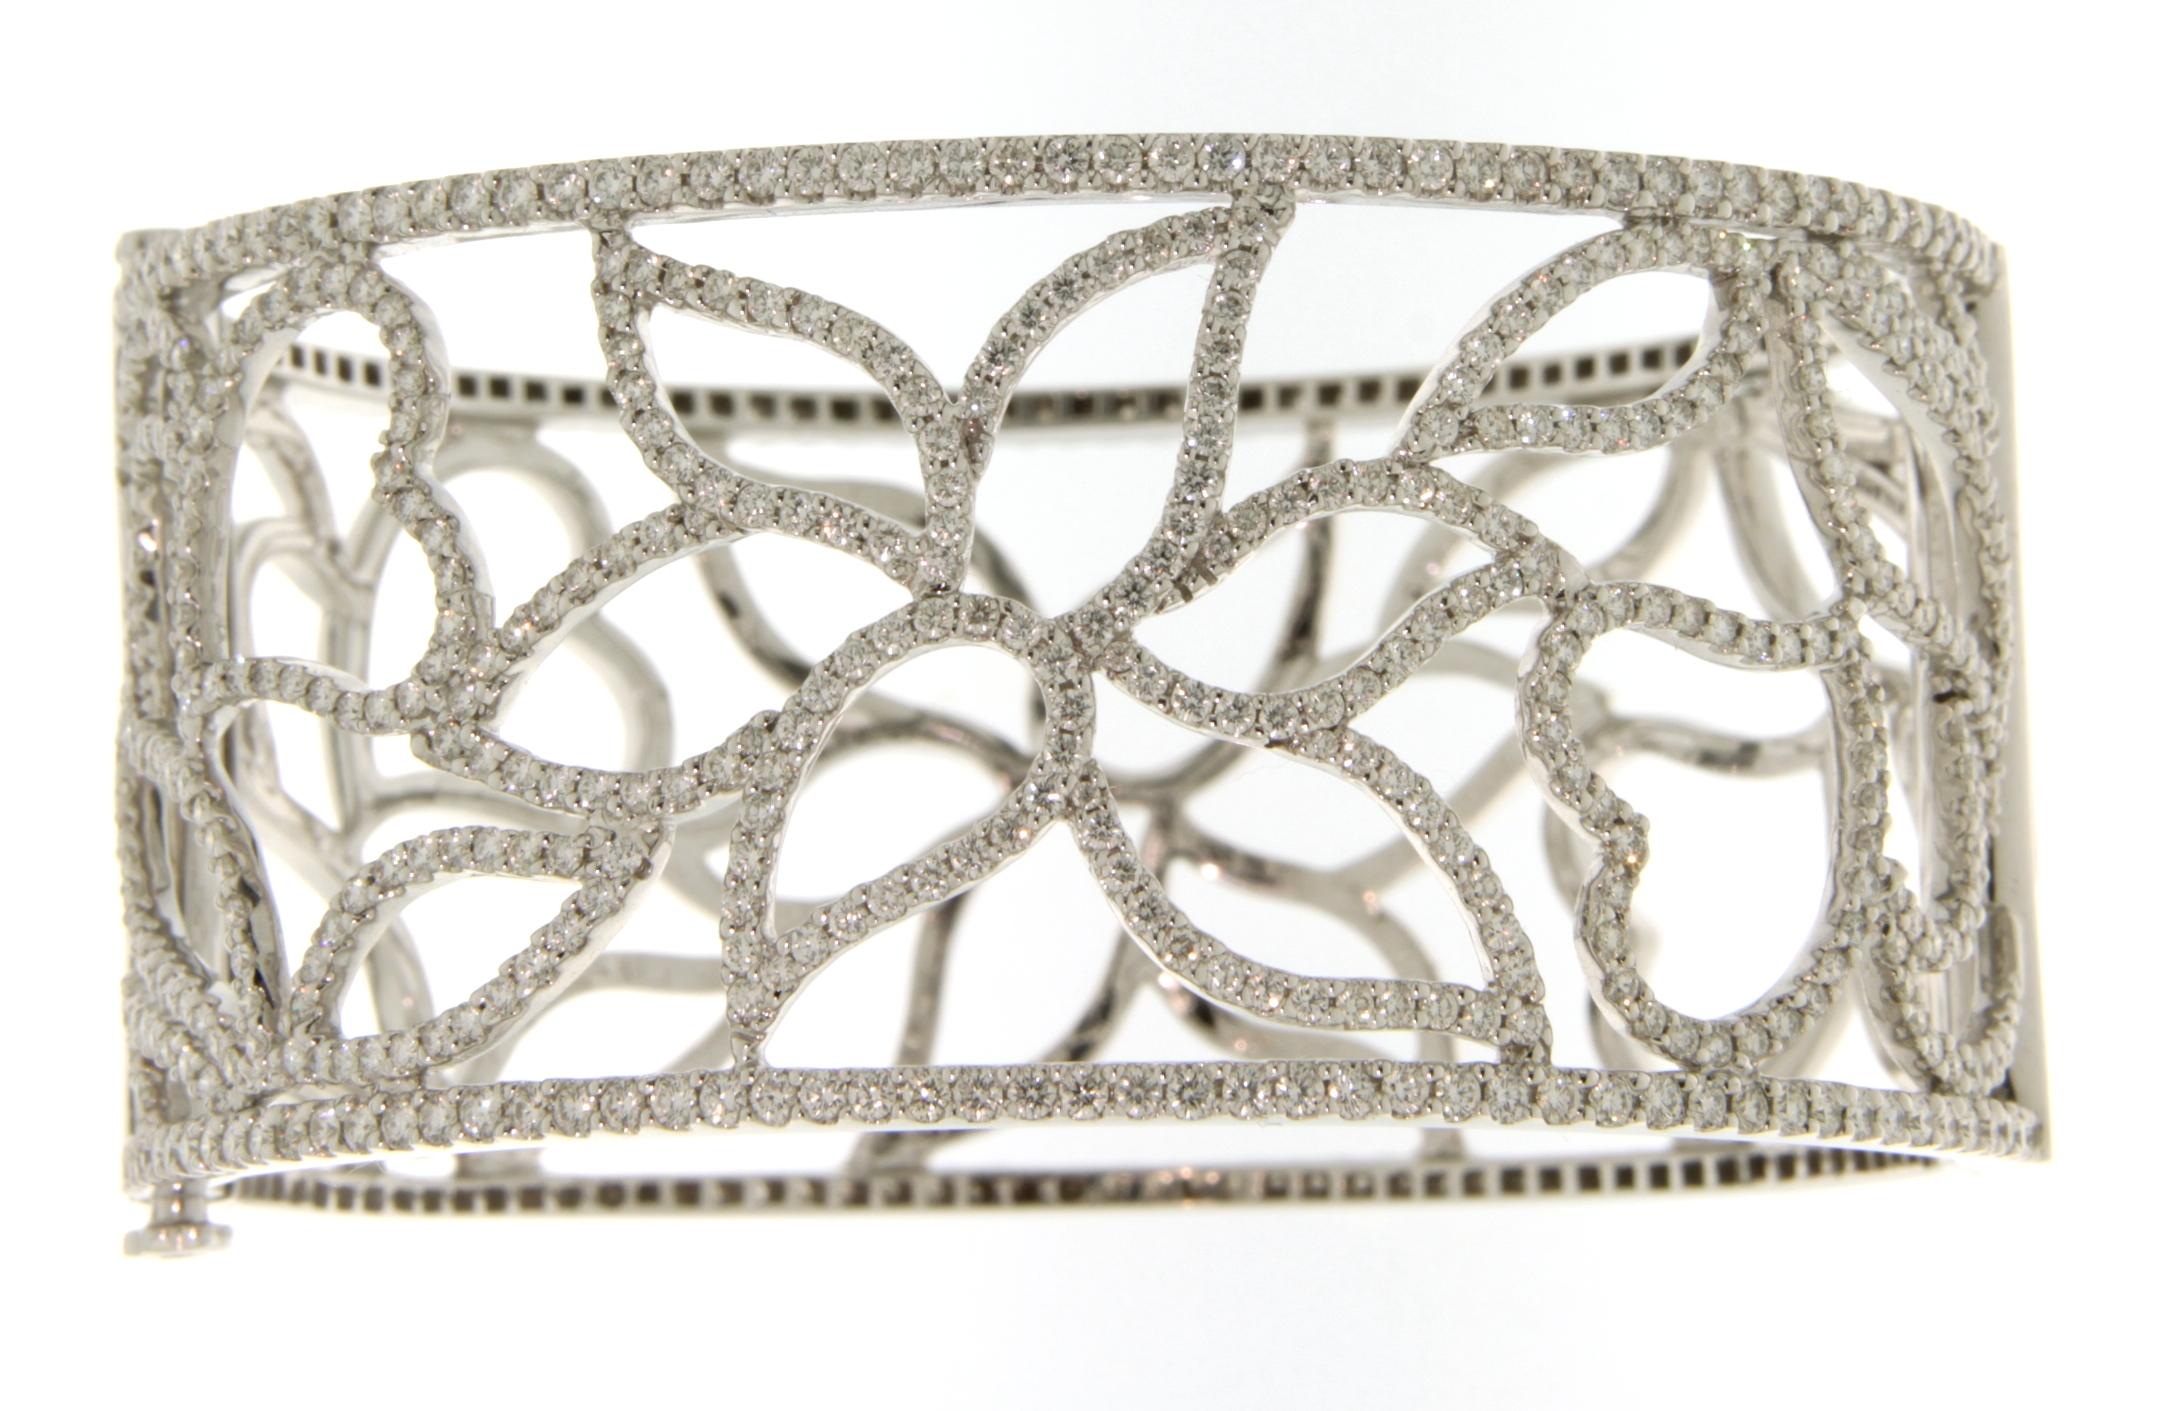 Schönes Armband aus 18 kt. Weißgold, besetzt mit Diamanten im Brillantschliff. Dieses Armband wurde von der Natur inspiriert. Jeder Diamant an seinem Platz repräsentiert gemeinsam die Blumen und die Liebe zur Natur. 
Es ist ein sehr schönes Armband